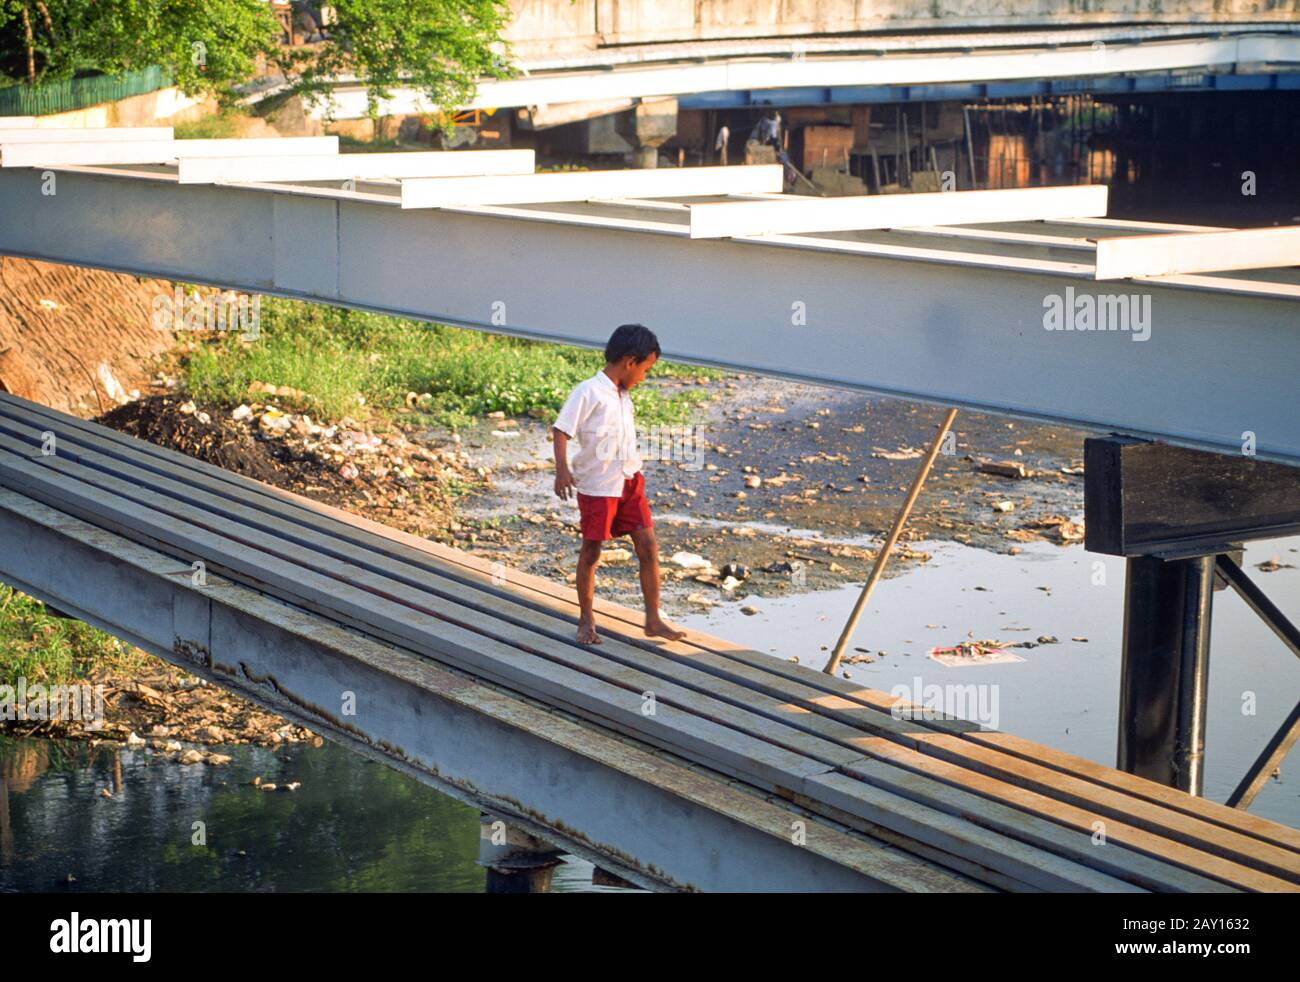 Un jeune garçon marche le long de tuyaux traversant un canal parsemé de détritus, Jakarta, Indonésie, juin 1995 Banque D'Images